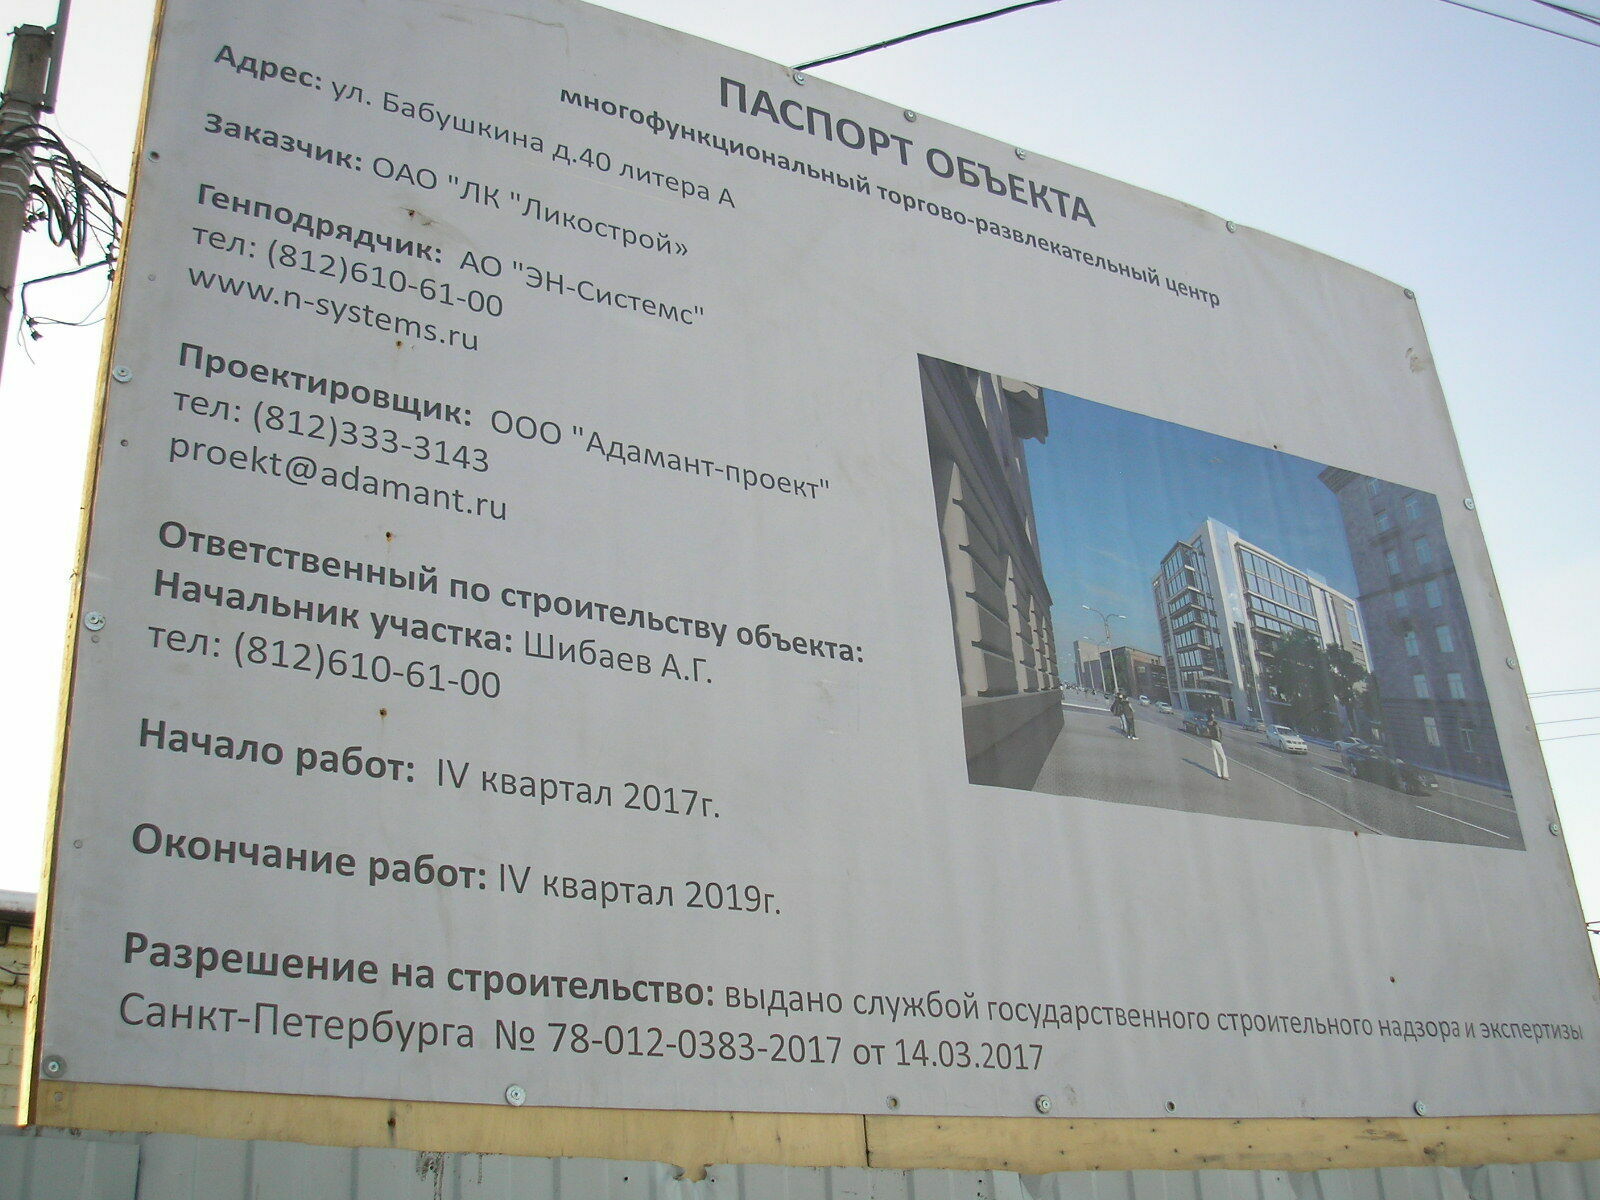 Вот так, по замыслу бизнесменов, будет выглядеть их билдинг, возведенный на костях  ленинградцев